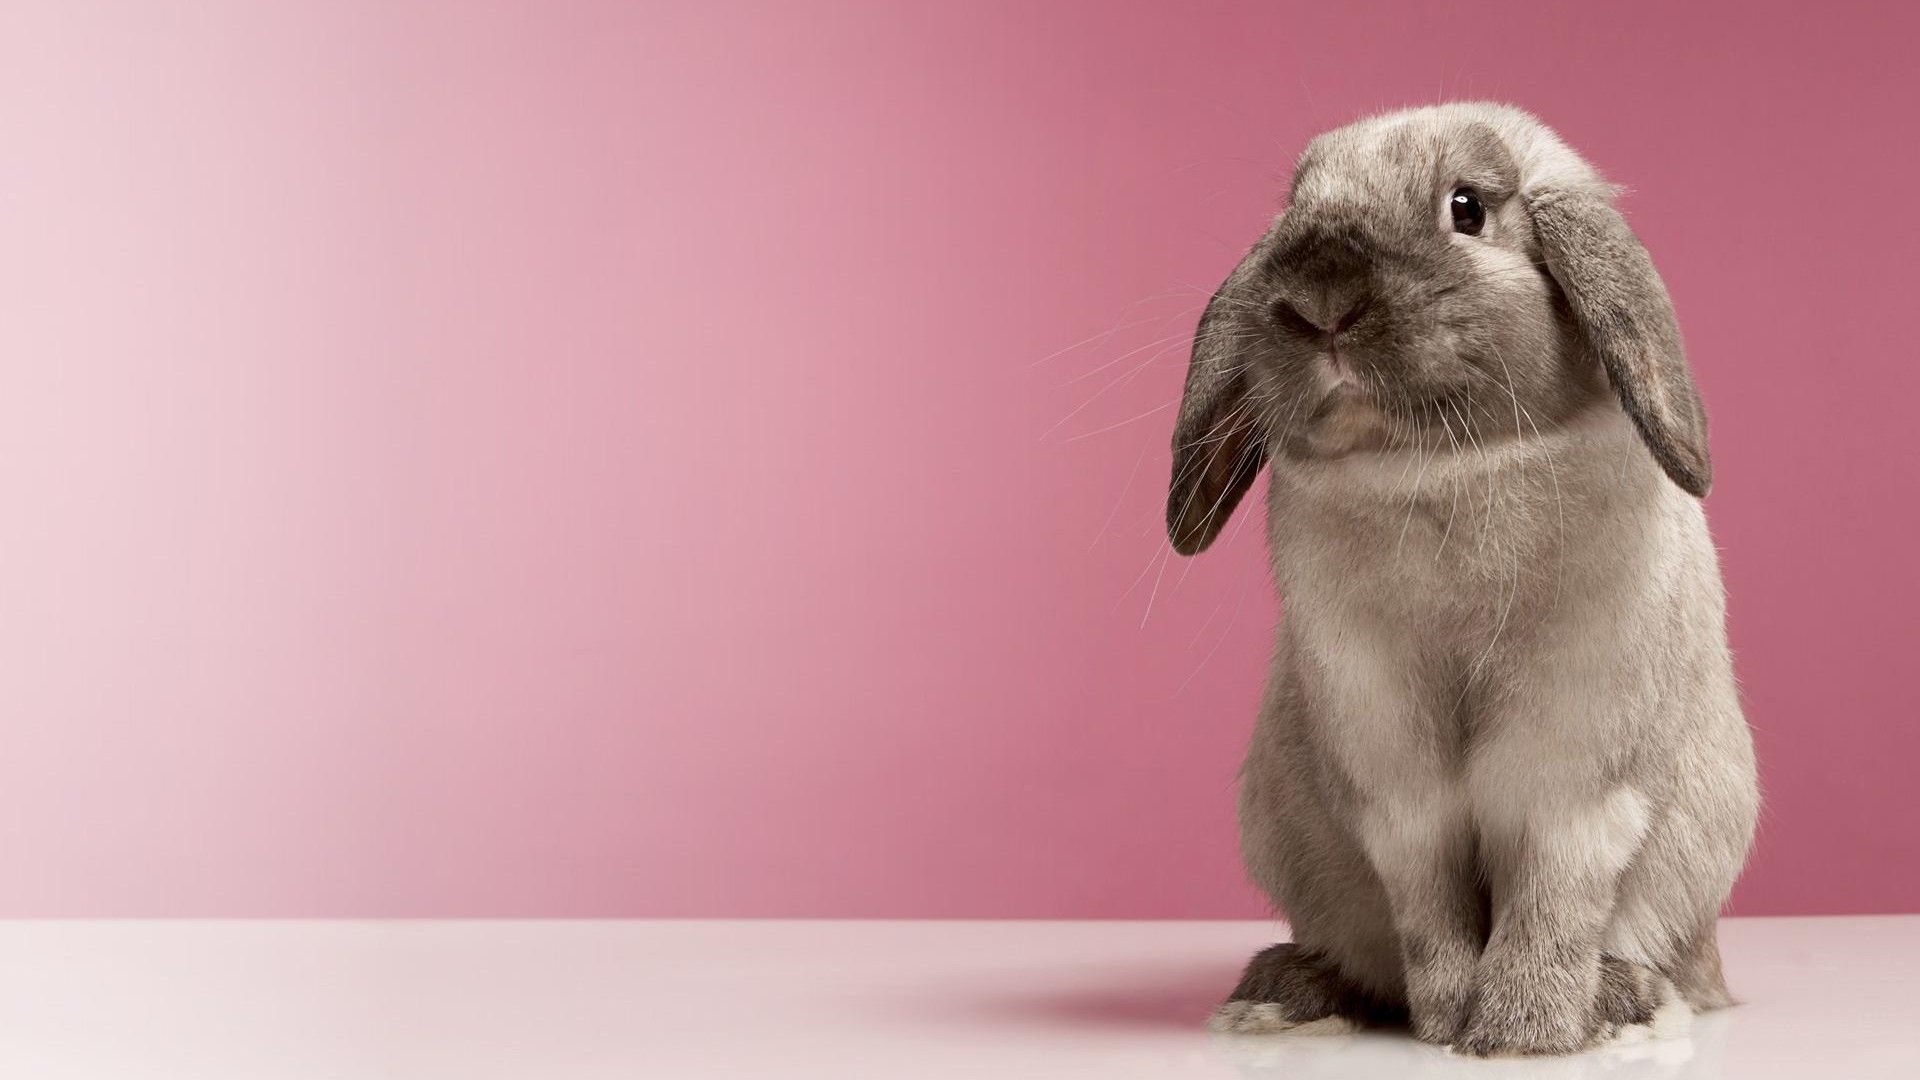 Very Cute Rabbit HD desktop wallpaper, Widescreen, High